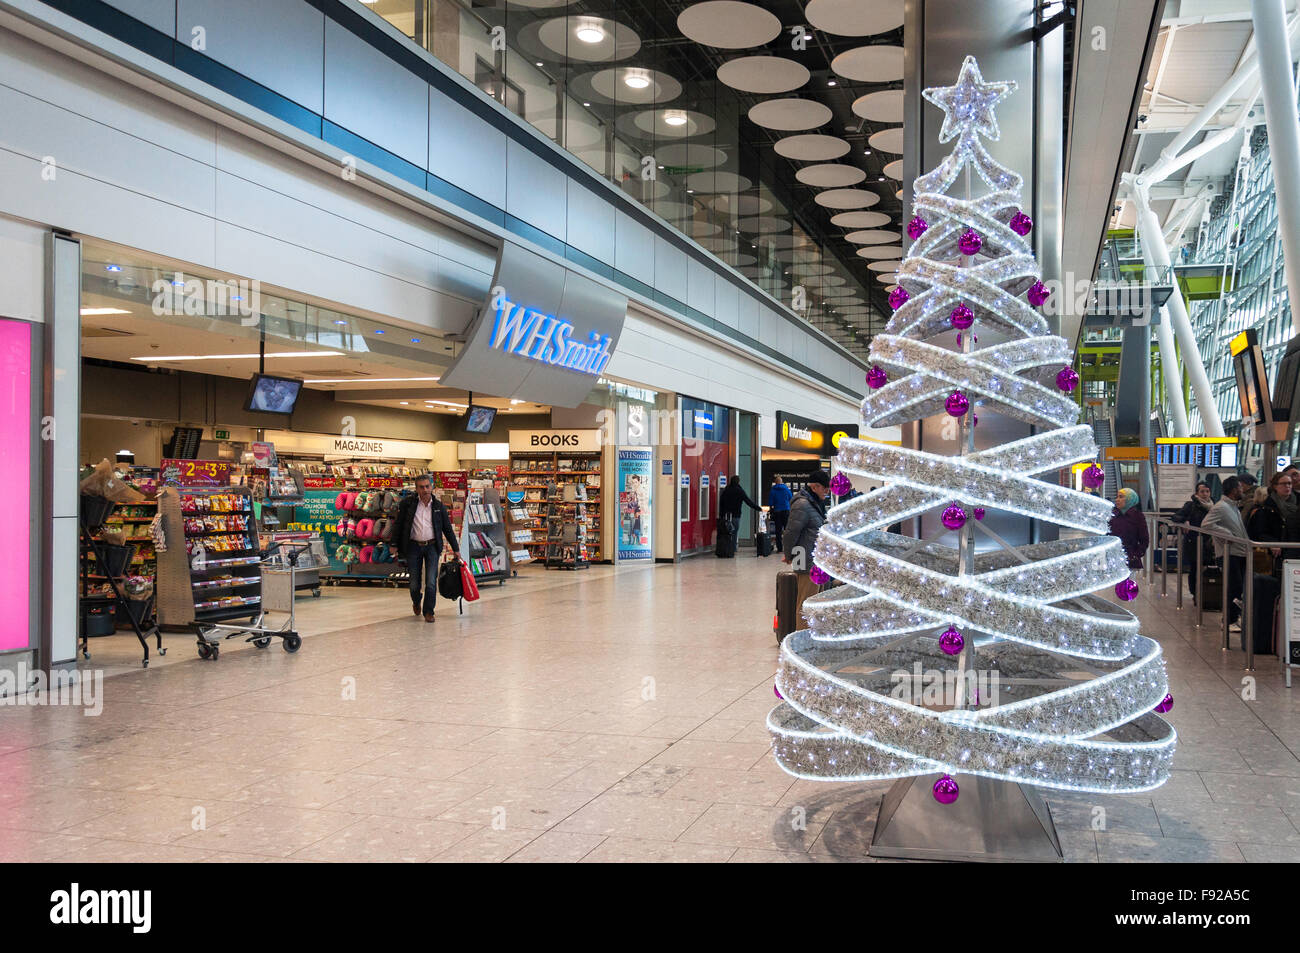 Albero di natale a livello arrivi, il Terminal 5 di Heathrow Airport. Hounslow, Greater London, England, Regno Unito Foto Stock